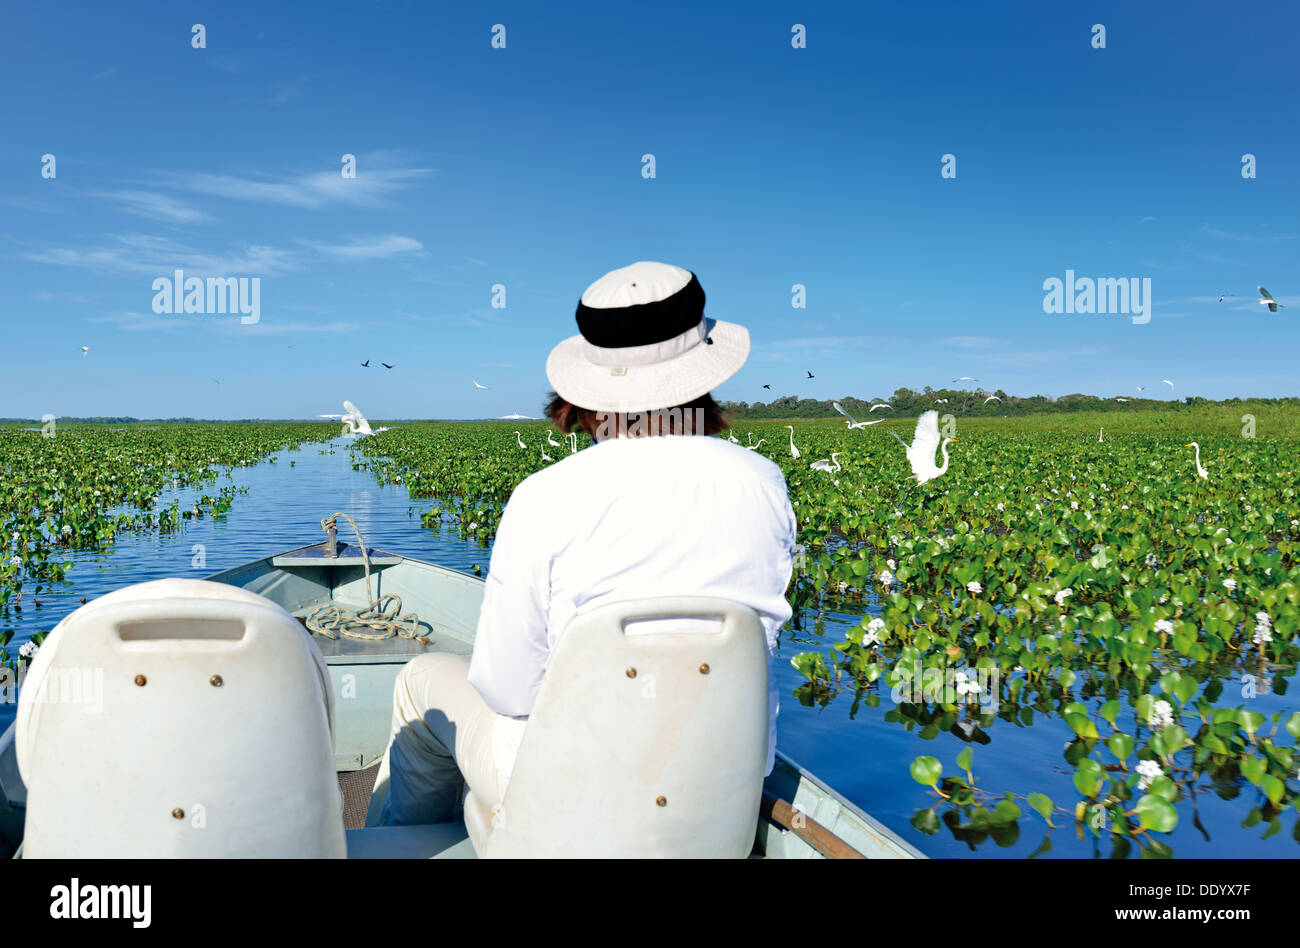 Brésil, Pantanal : Woman with hat sur un voyage en bateau à travers un lac avec des lotus l'observation des oiseaux Banque D'Images